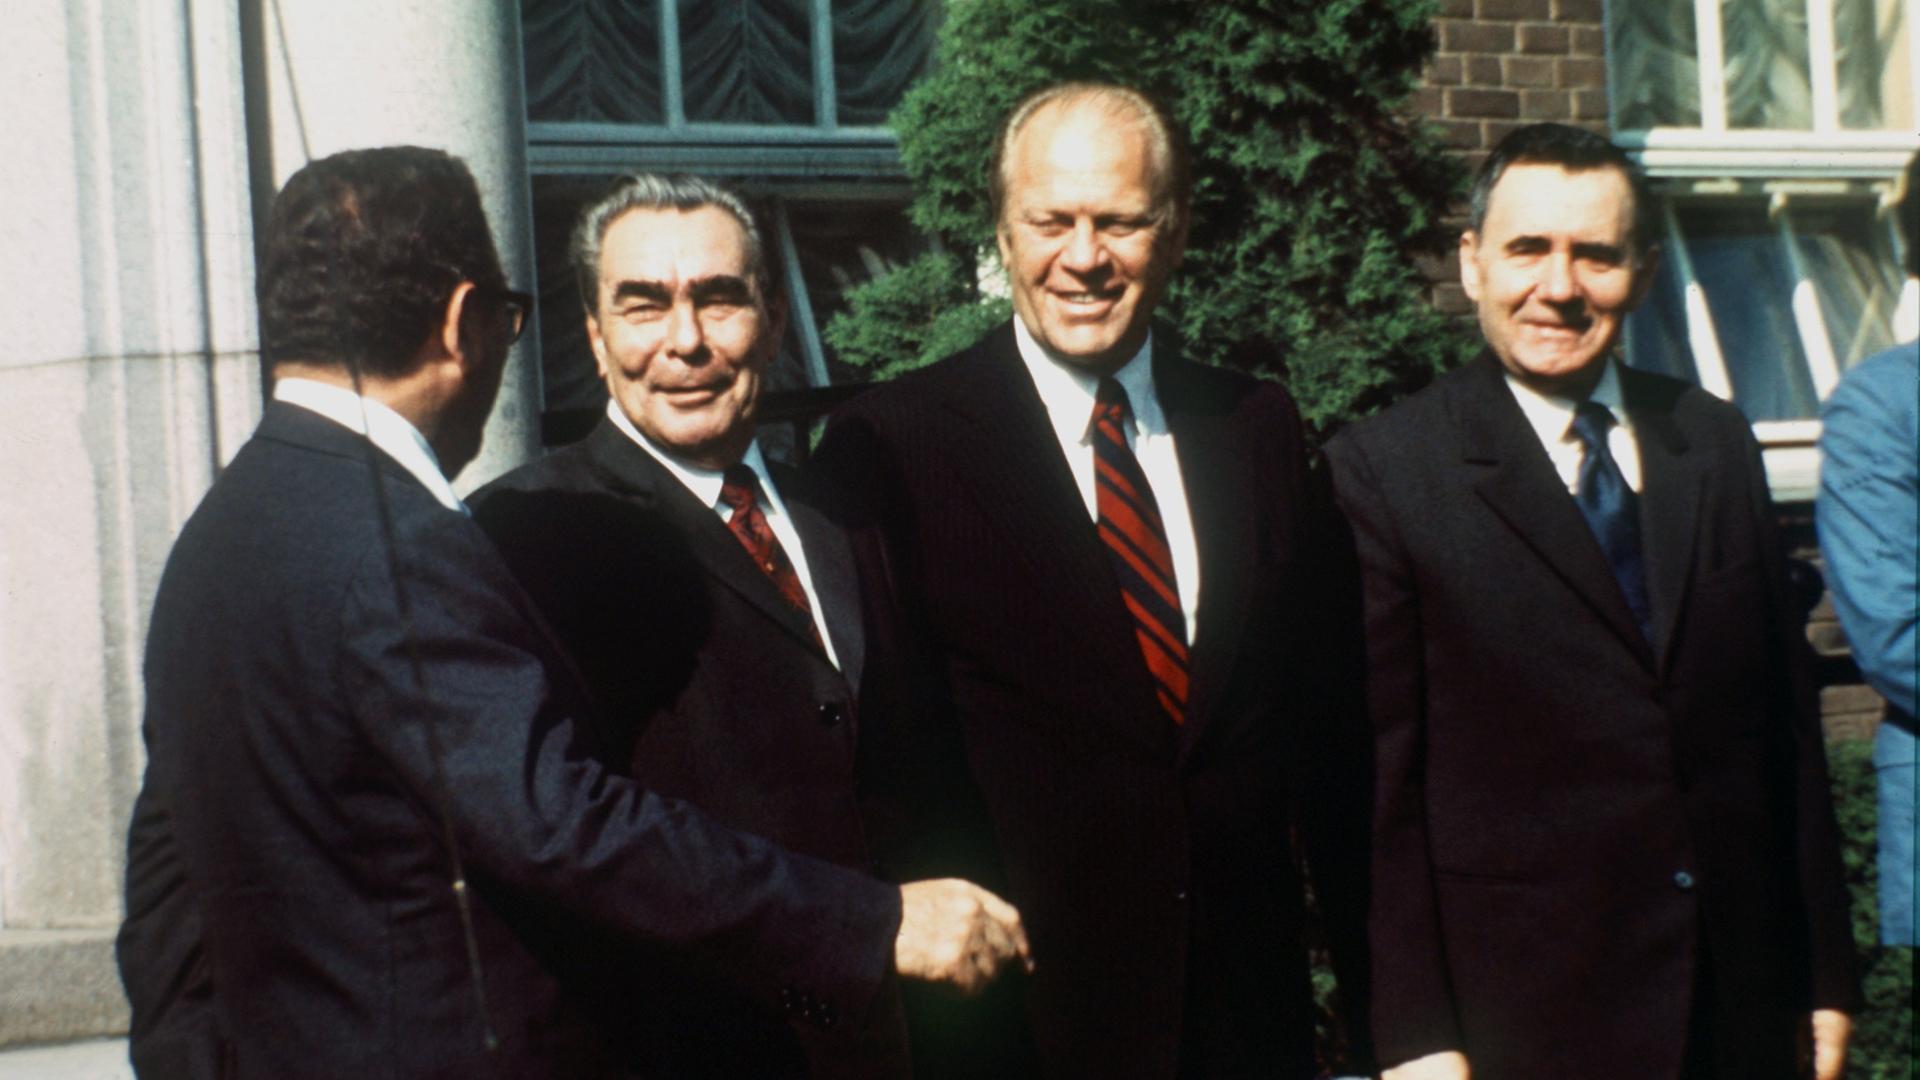 Ein Farbfoto zeigt vier lachende Männer. In der Bildmitte reichen sich der sowjetische Parteichef Leonid Breschnew, und US-Präsident Gerald Ford die Hand.